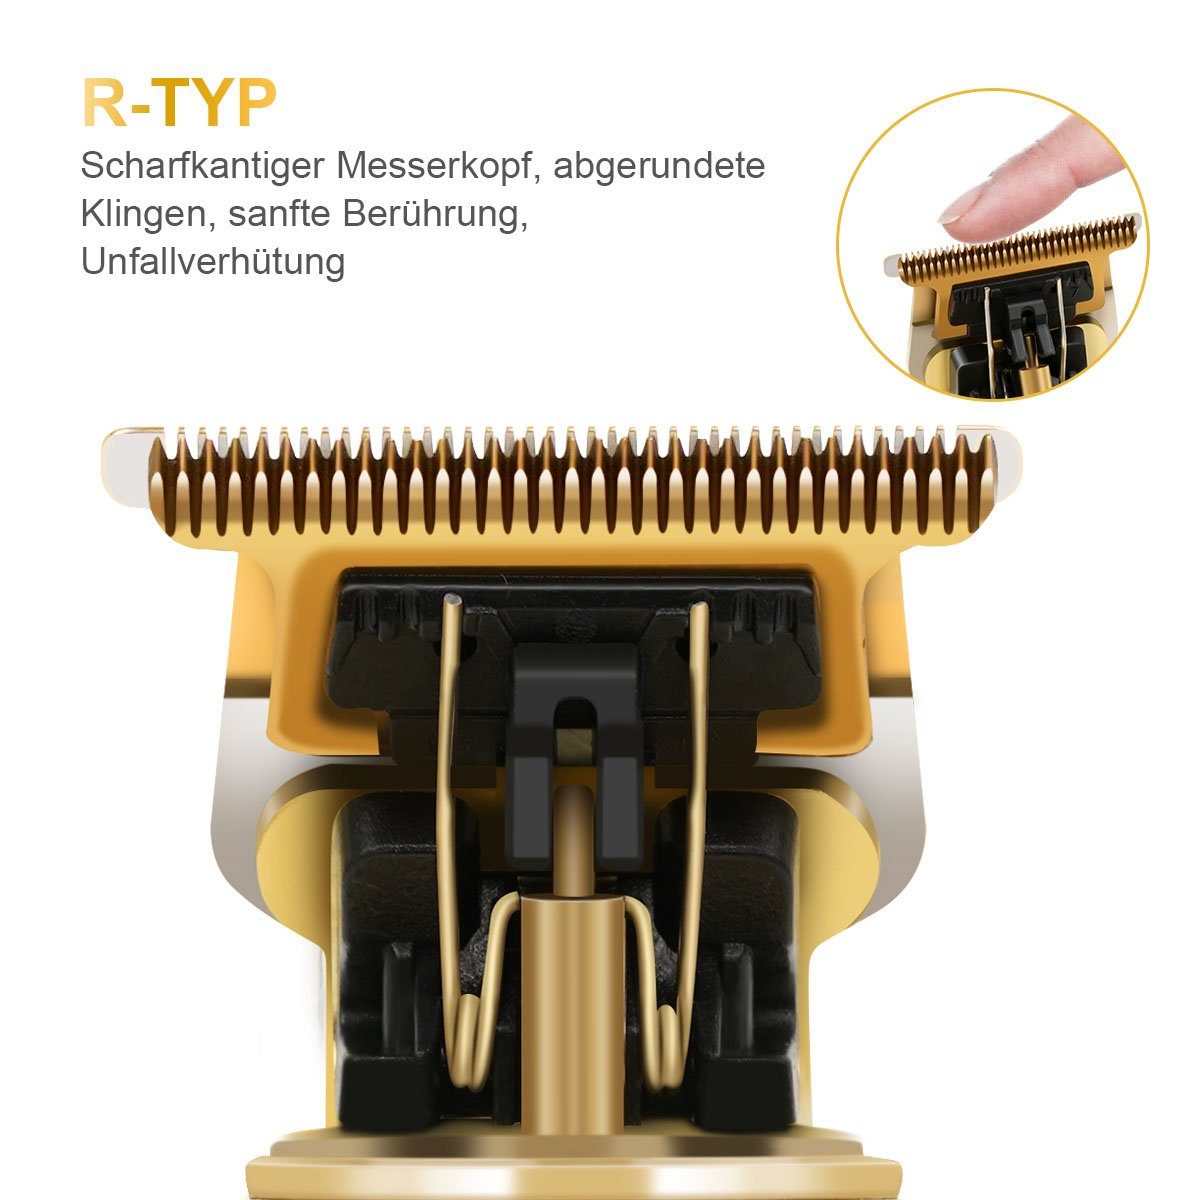 7Magic Haar- und Bartschneider, Haarschneidemaschine Gold-1202 Kabellose Wiederaufladbare Kahle für Männer Barbierschere, Haarschneider